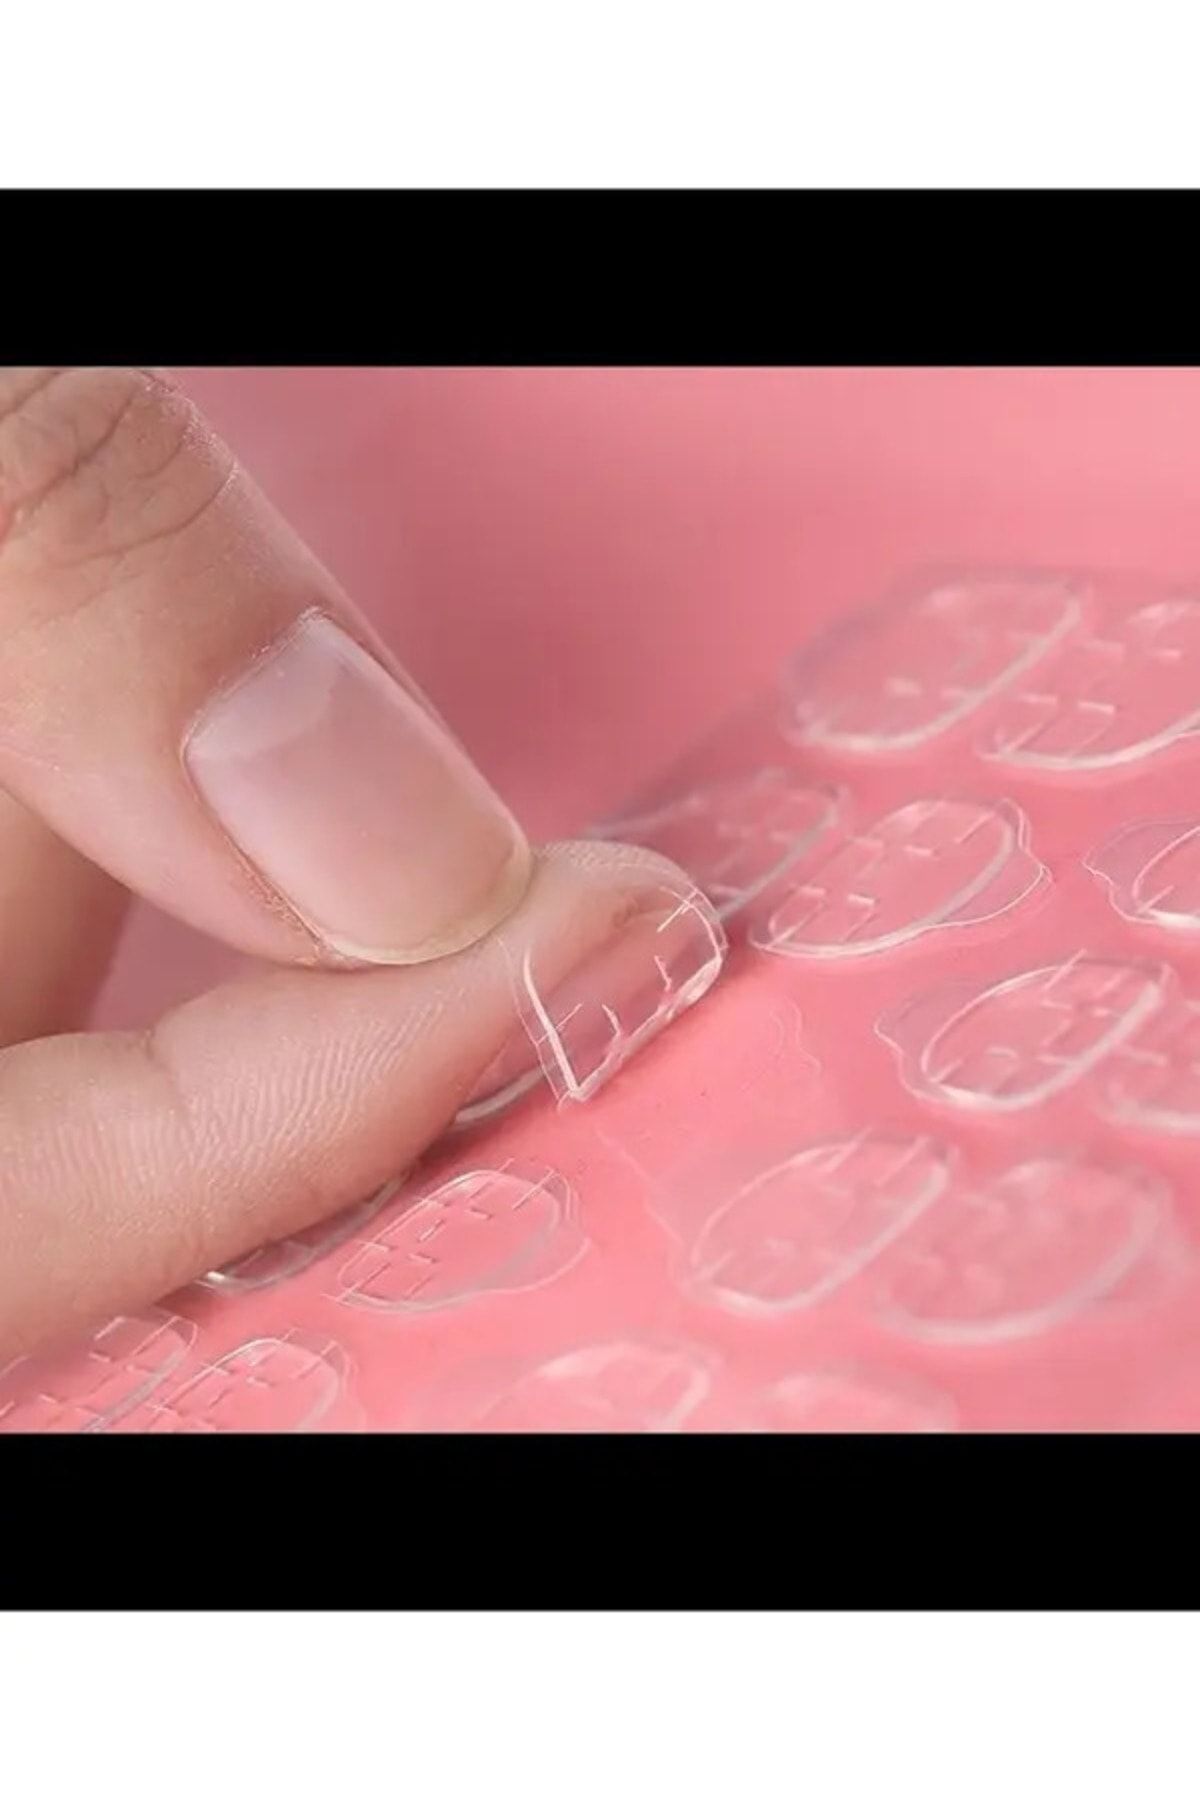 NİGİNA 240 Adet Takma Tırnak Yapıştırıcı Protez Yapıştırıcı Jel Sticker Tak Çıkar Yapıştırma Bandı